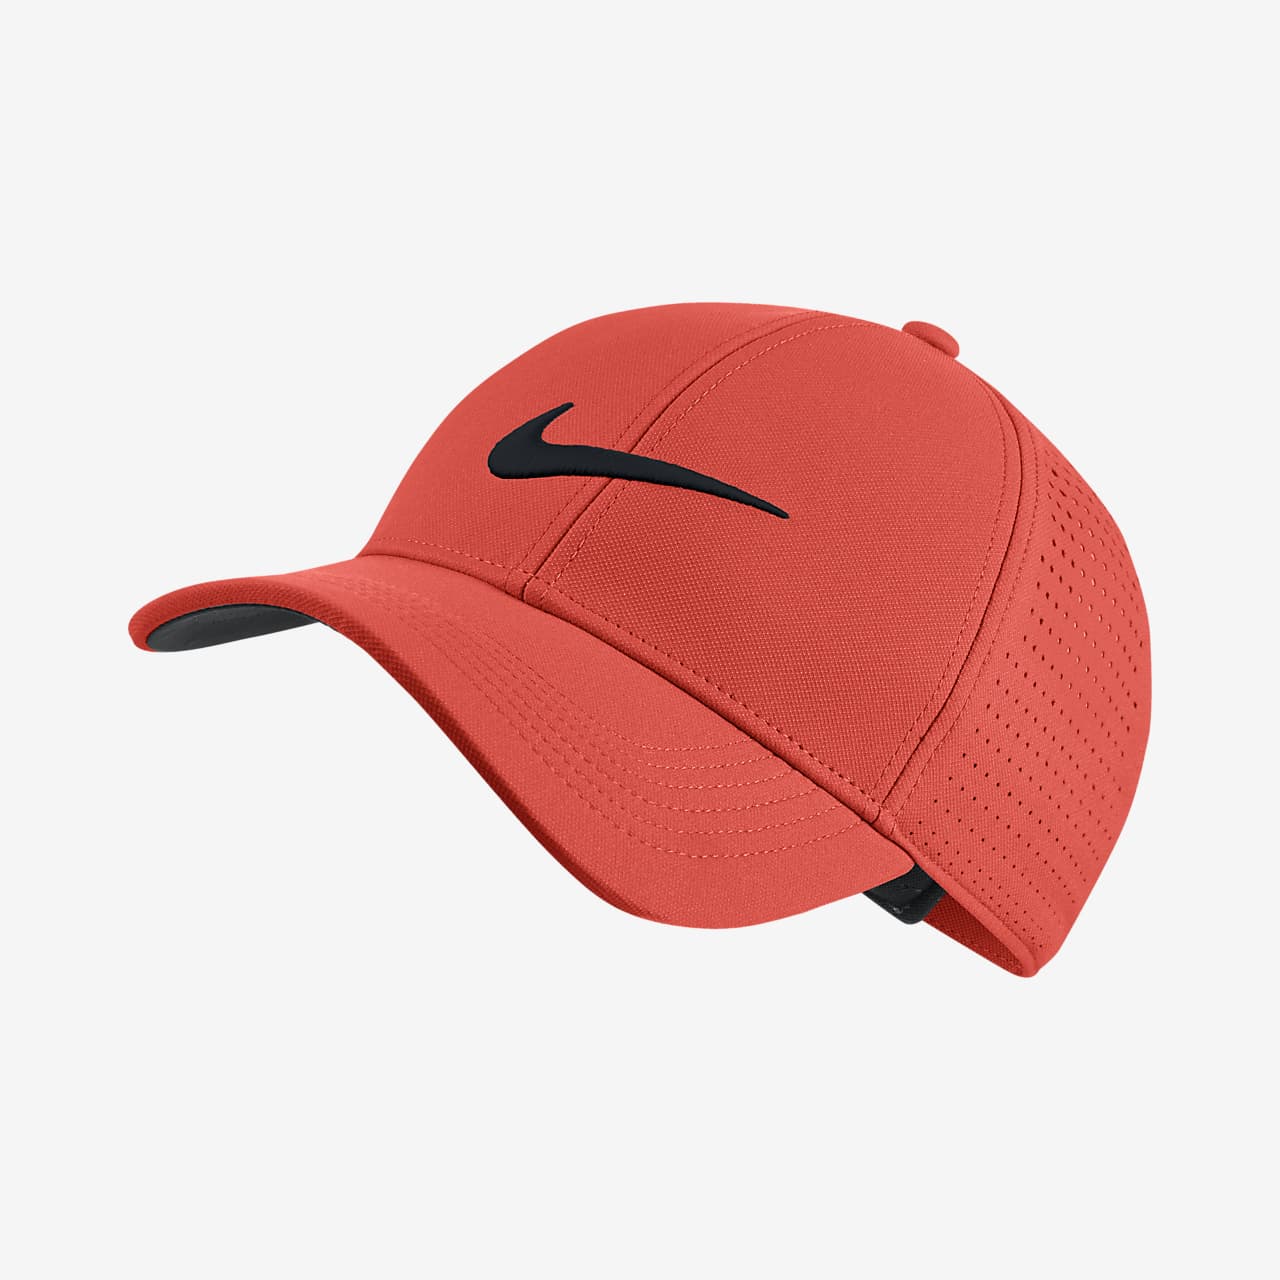 หมวกกอล์ฟปรับได้ Nike Legacy 91 Perforated